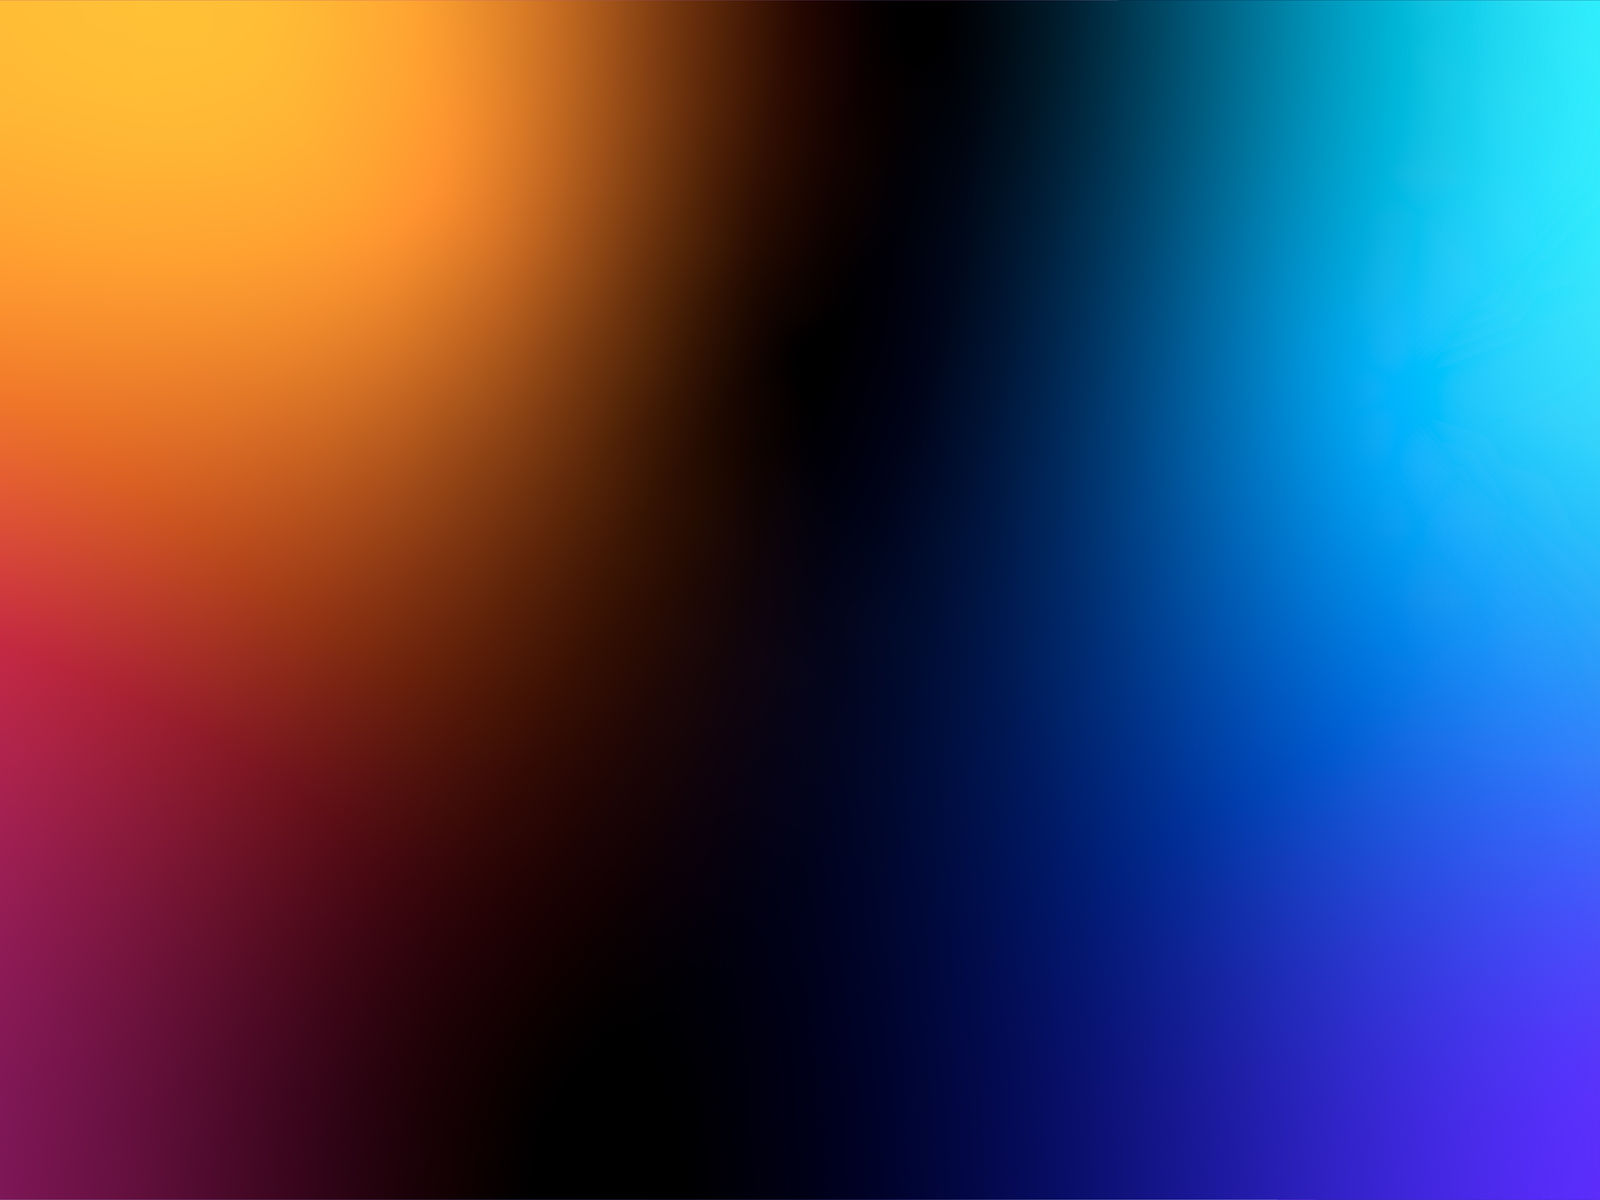 blur-of-3-colors-m3.jpg